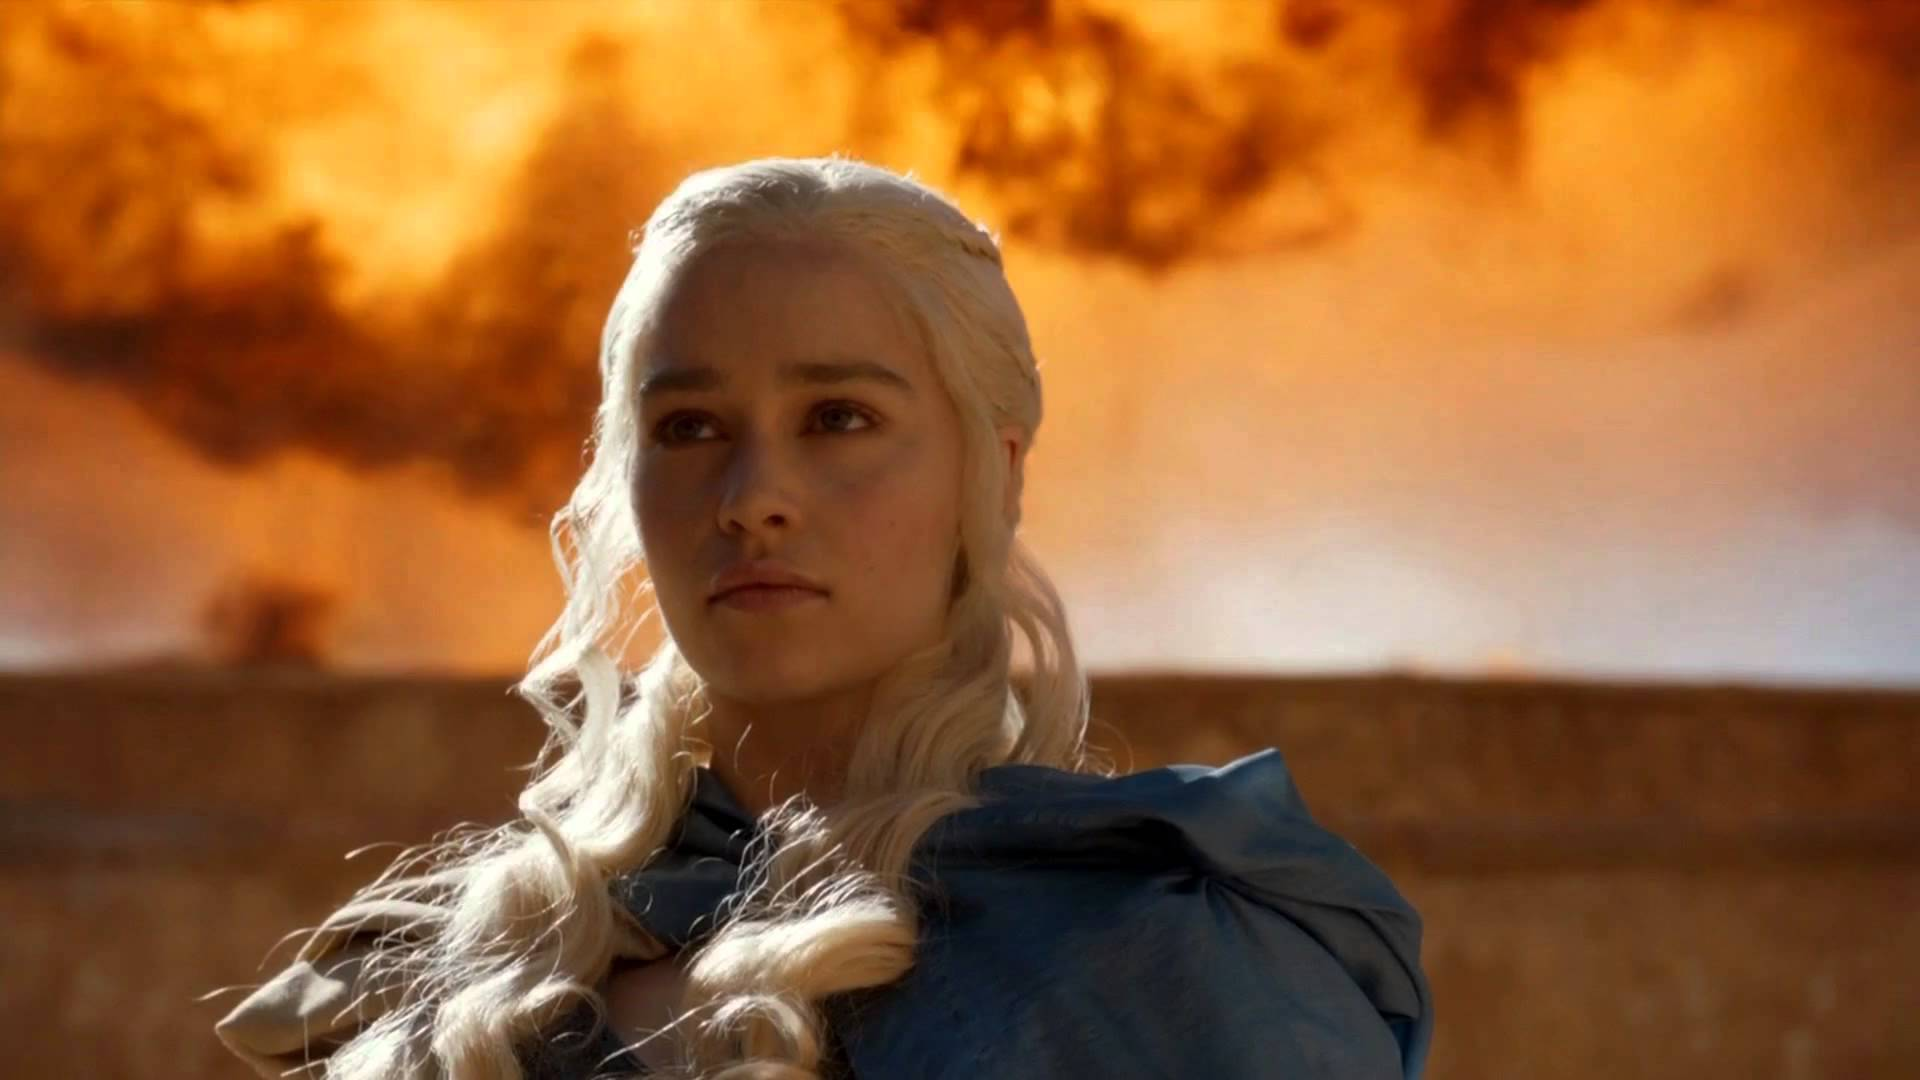 Game of Thrones': Elenco não está NADA satisfeito com o desfecho da série -  CinePOP